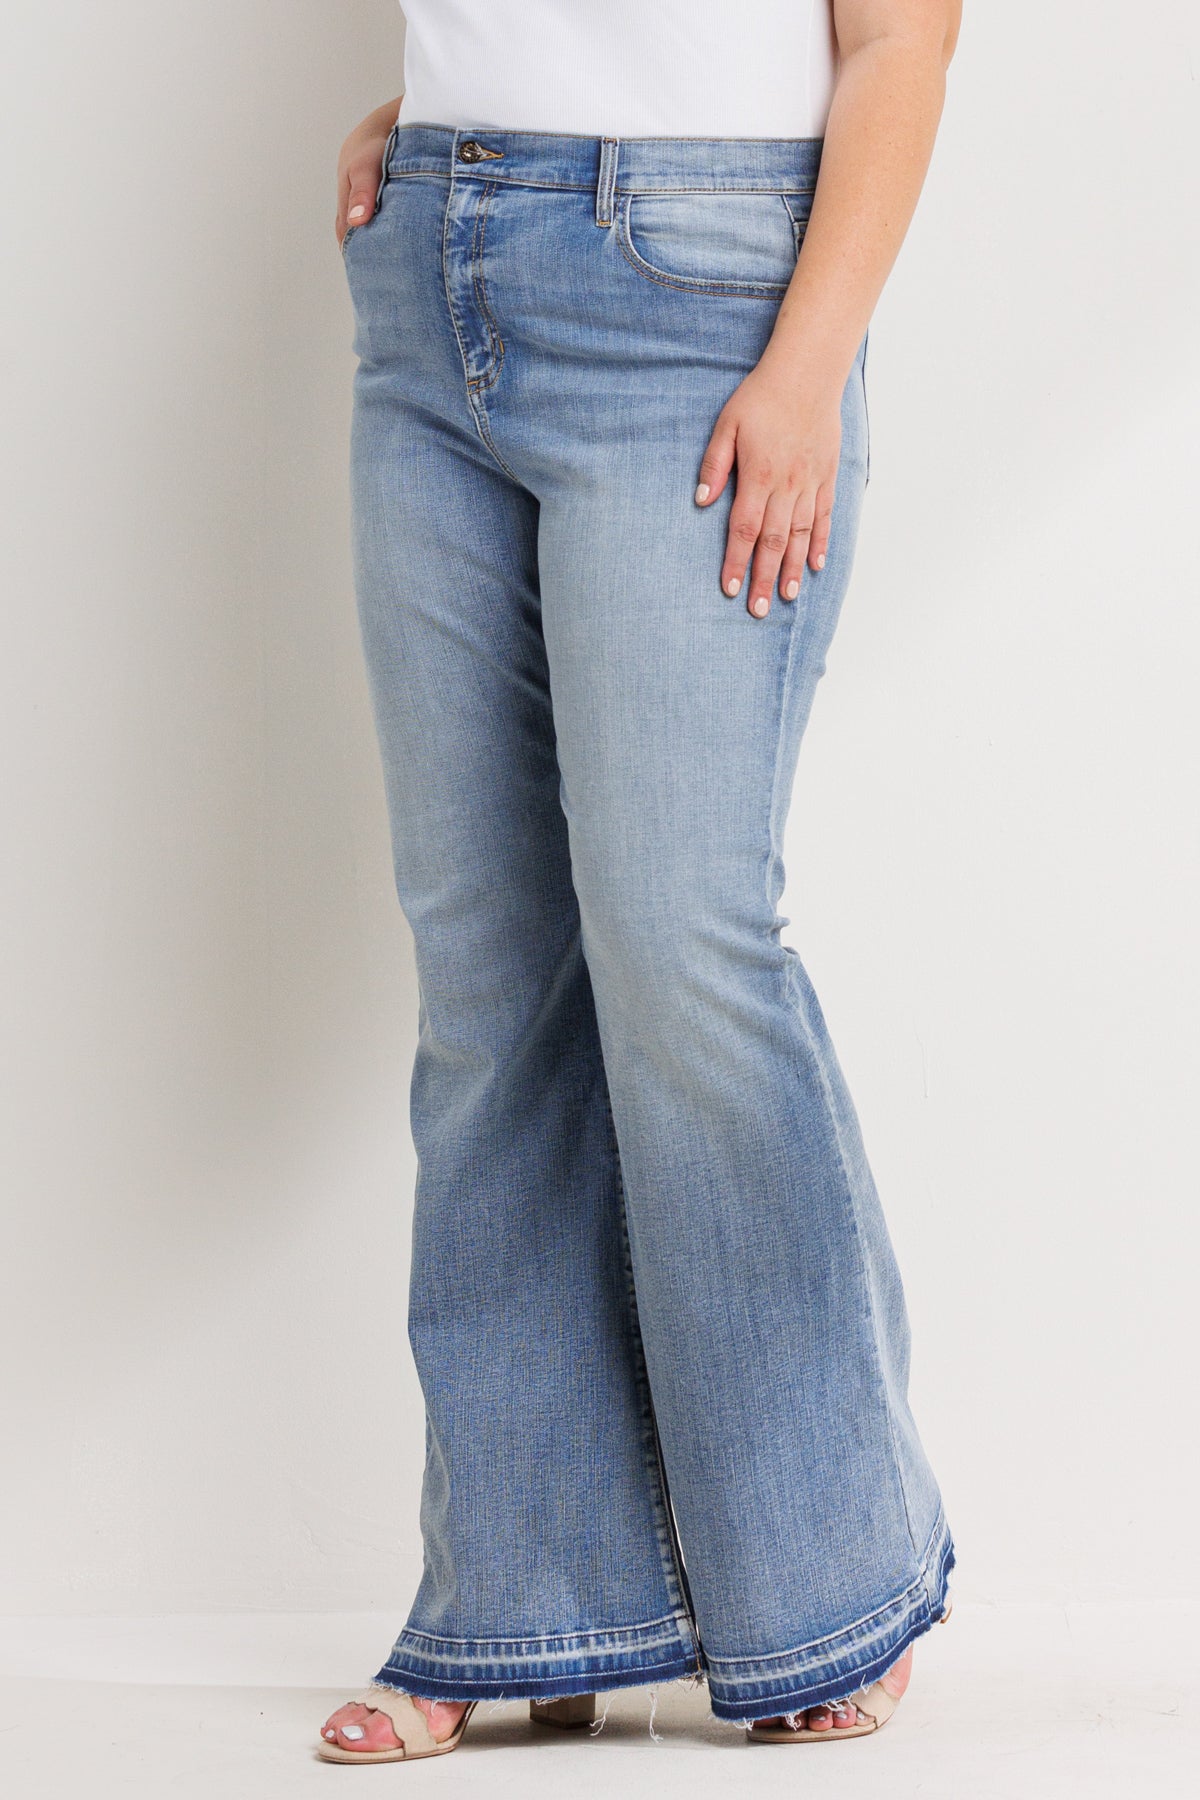 Sneak Peek Boot Cut Jeans - Accessorize In Style